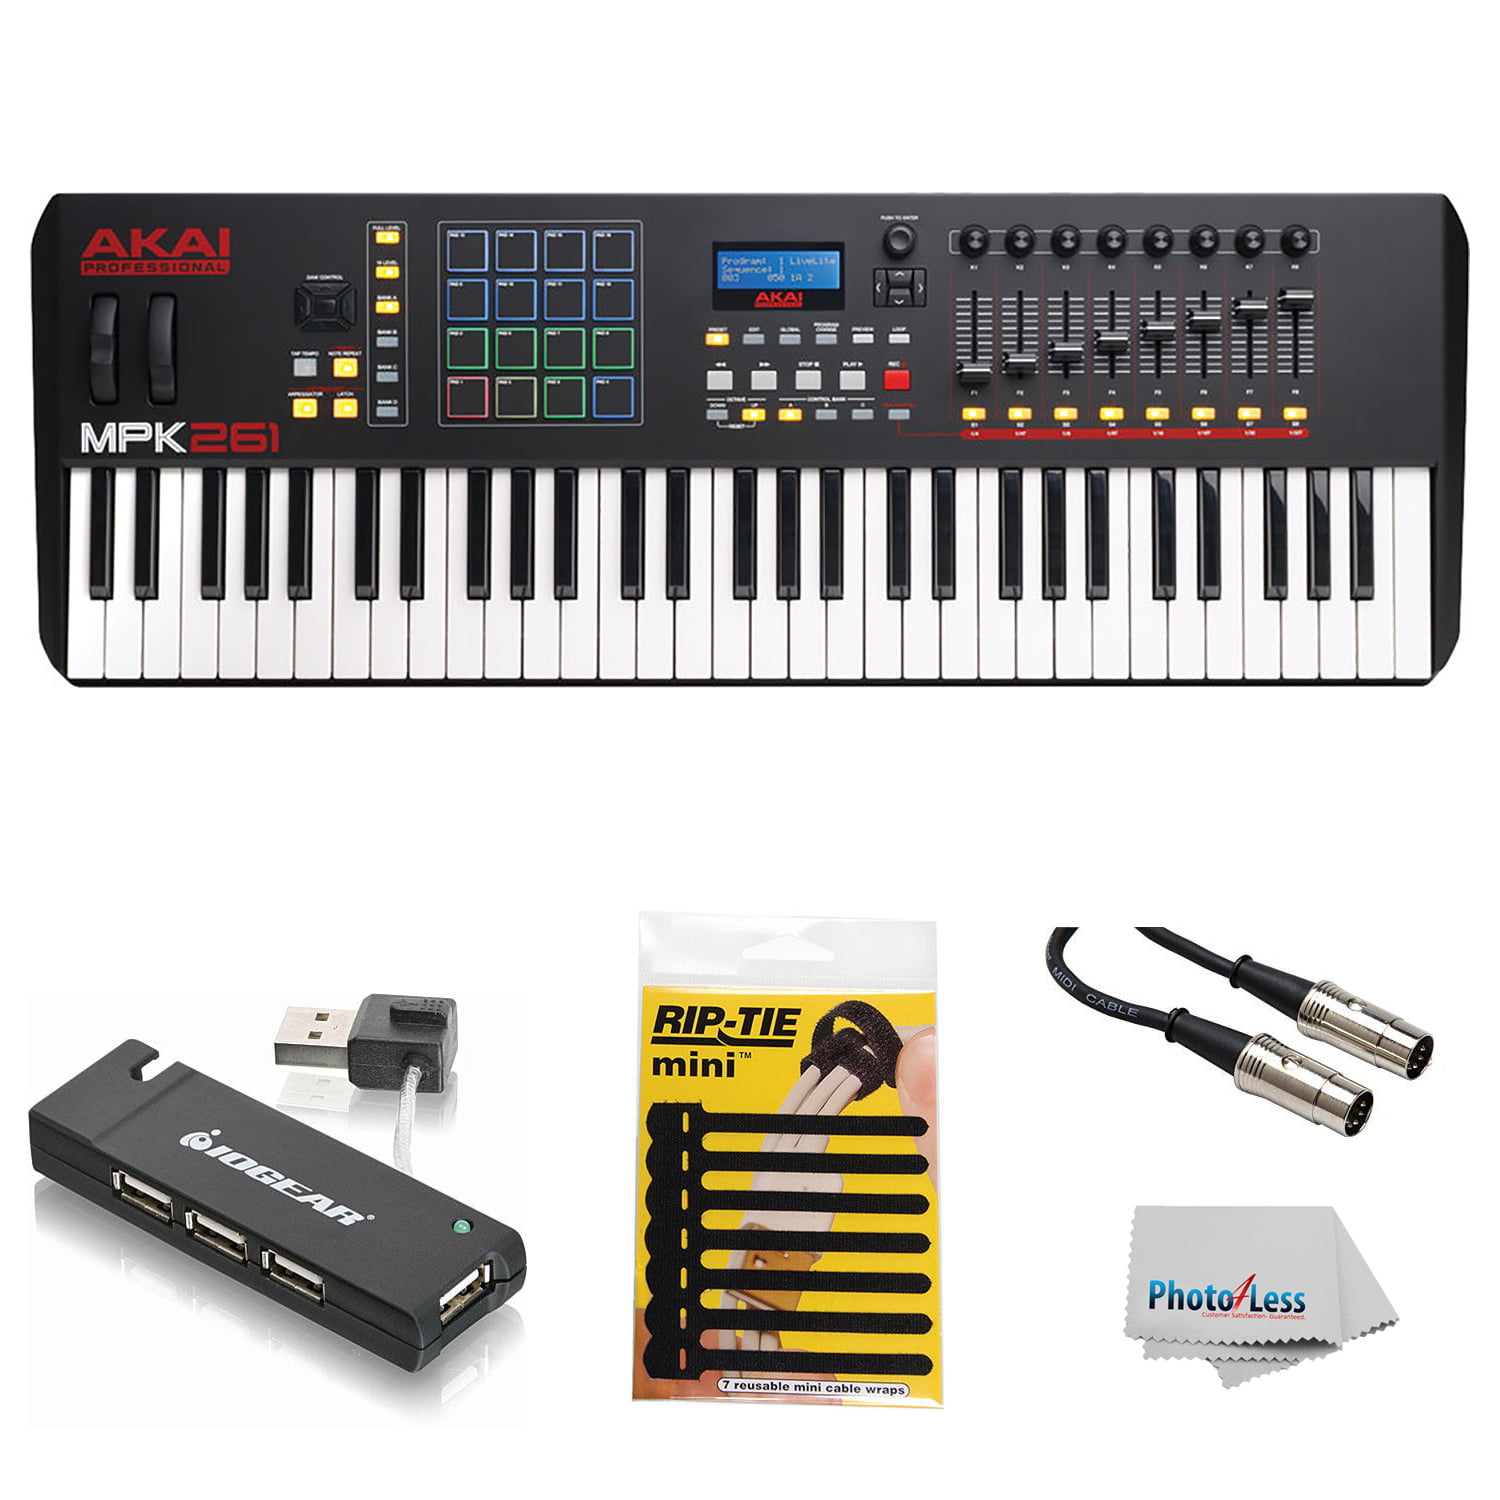 Akai Professional MPK261 | 61-Key USB MIDI Keyboard & Drum Pad